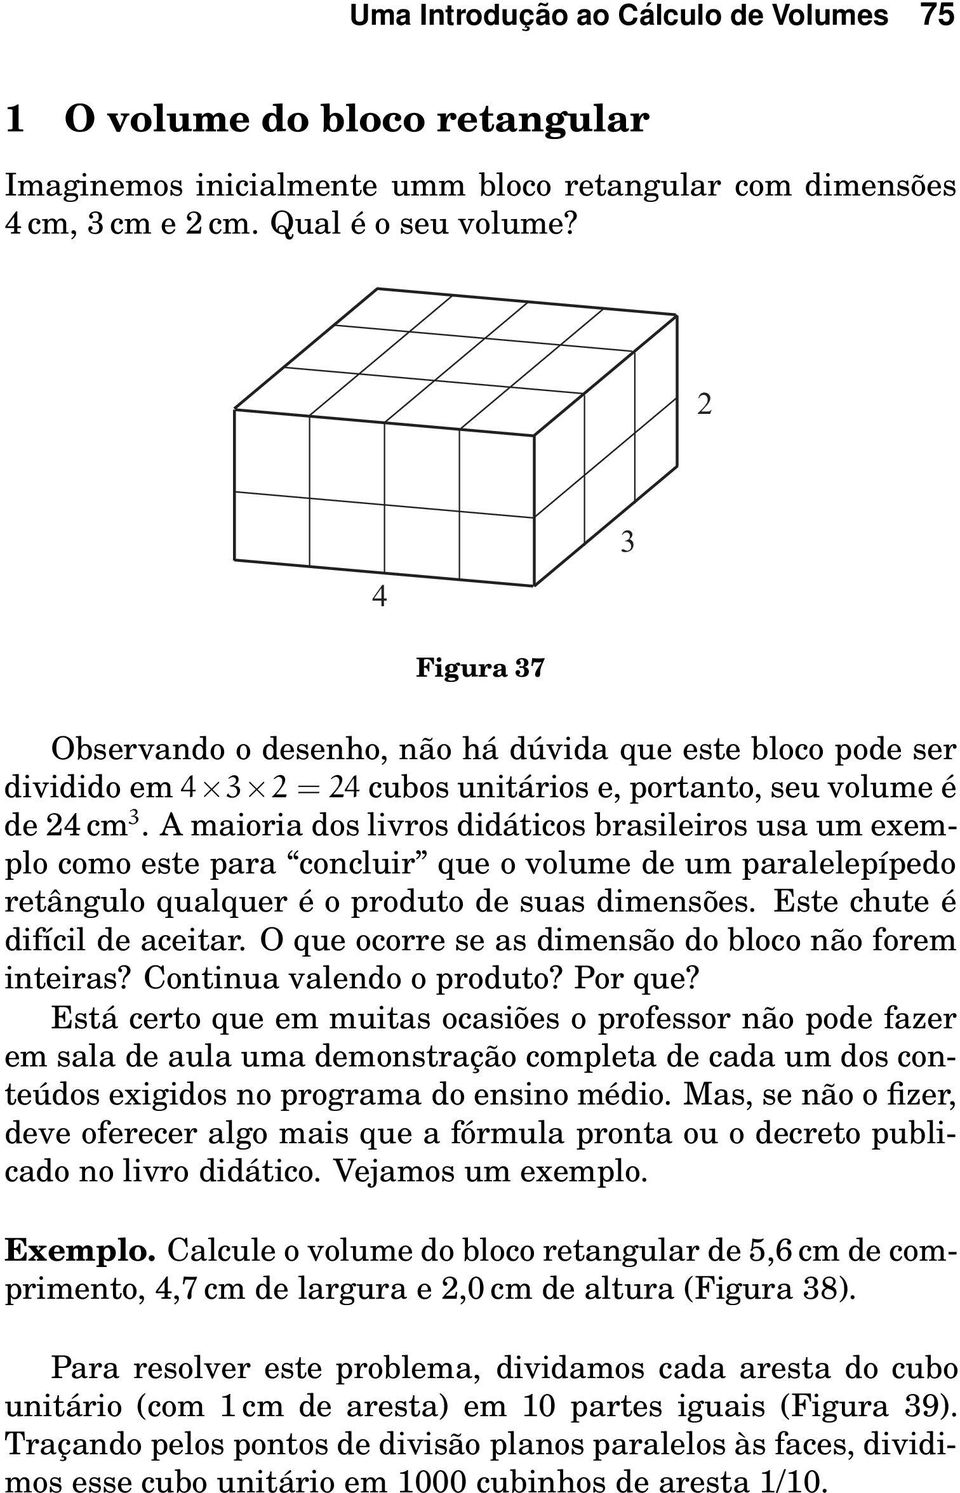 A maioria dos livros didáticos brasileiros usa um exemplo como este para concluir que o volume de um paralelepípedo retângulo qualquer é o produto de suas dimensões. Este chute é difícil de aceitar.